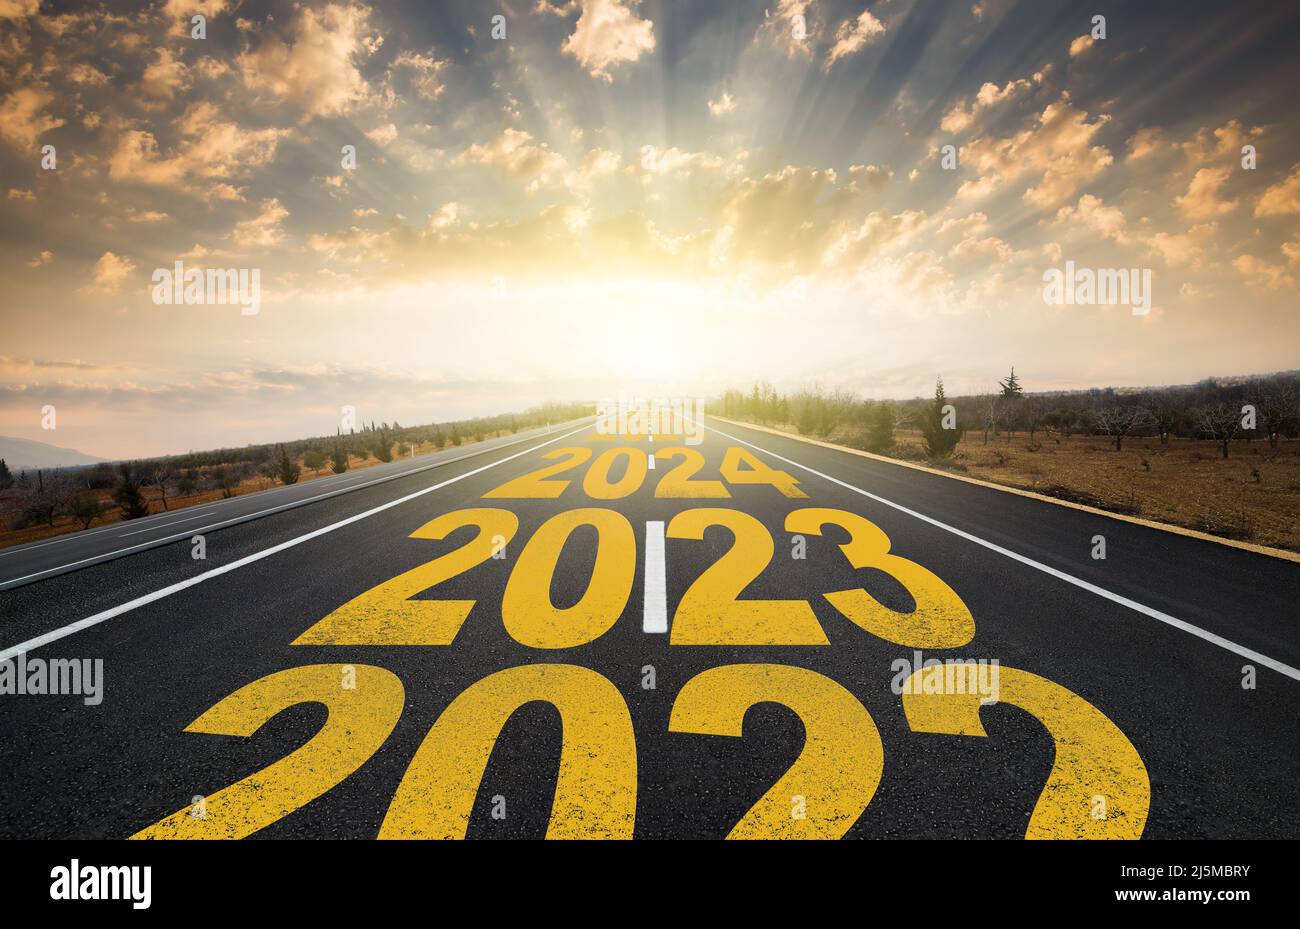 Le mot 2023 écrit sur la route au milieu de la route asphaltée vide au lever du soleil doré. Concept de la nouvelle année 2023. Concept de planification et de défi Banque D'Images